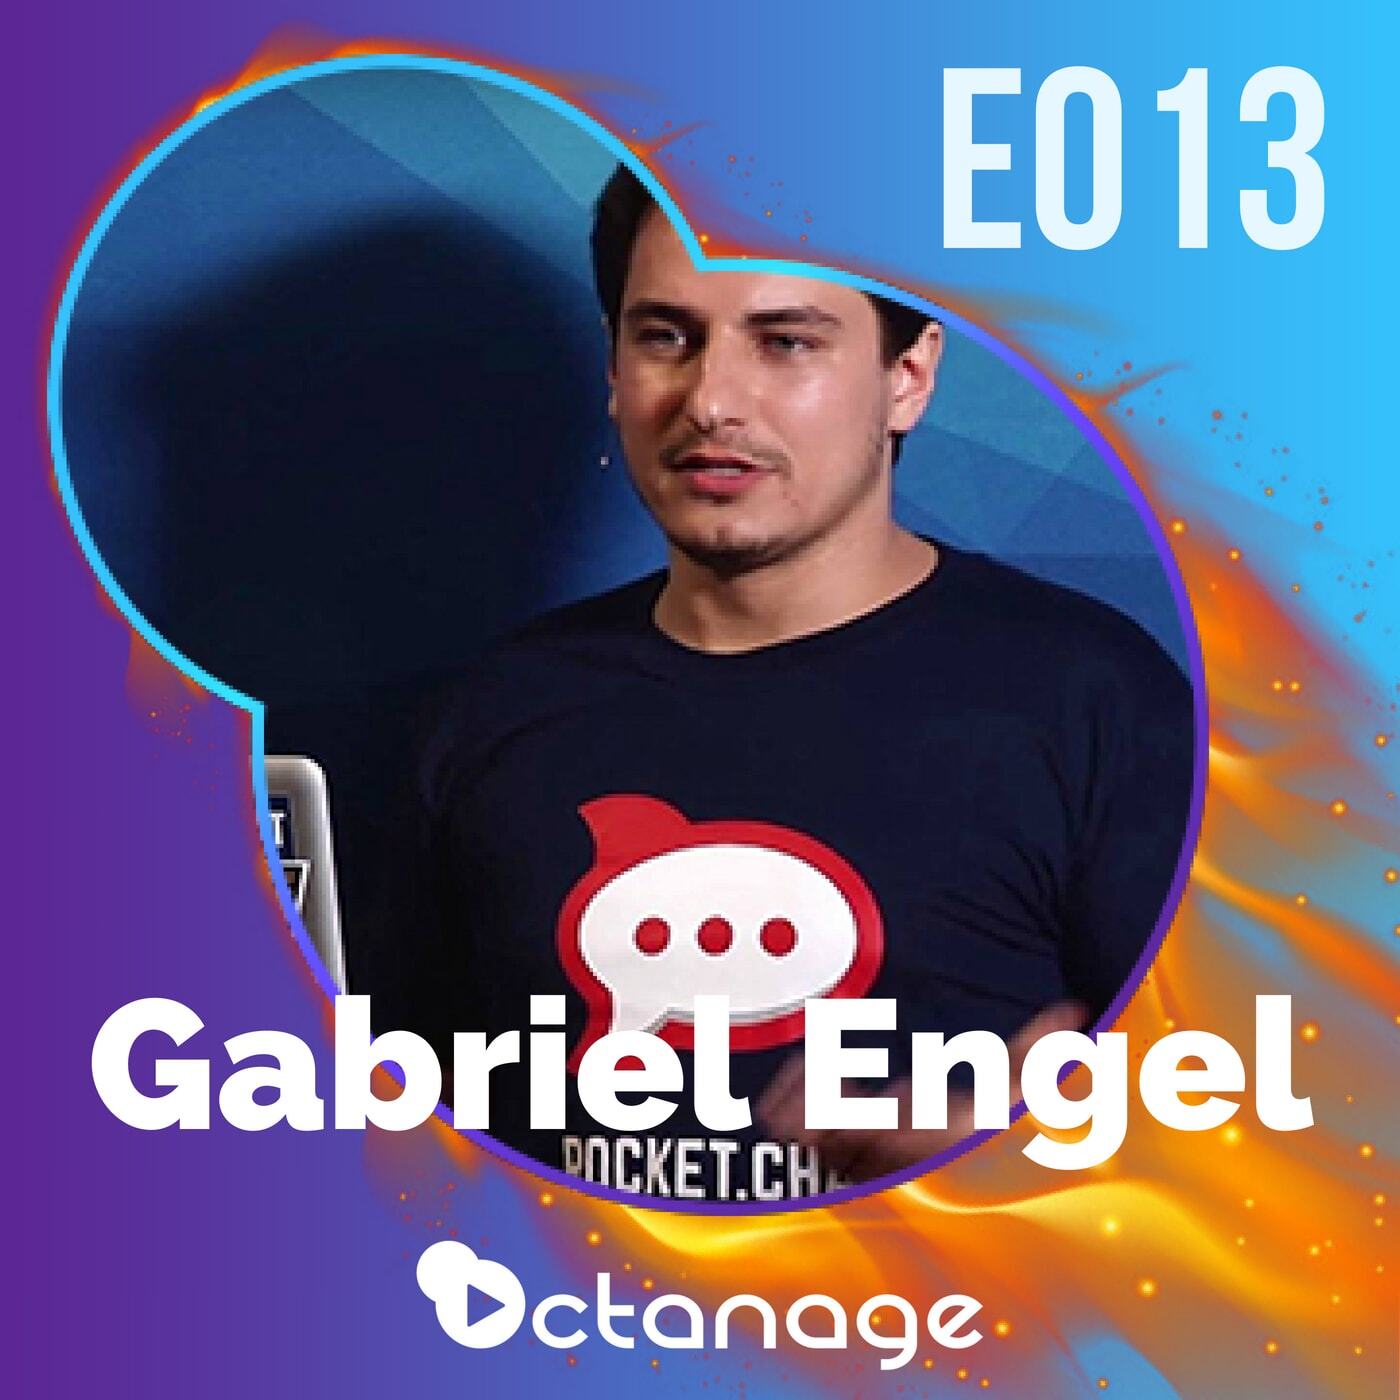 Inovação & Código Aberto: Um Novo Capítulo da Internet com Gabriel Engel | Rocket.Chat E013